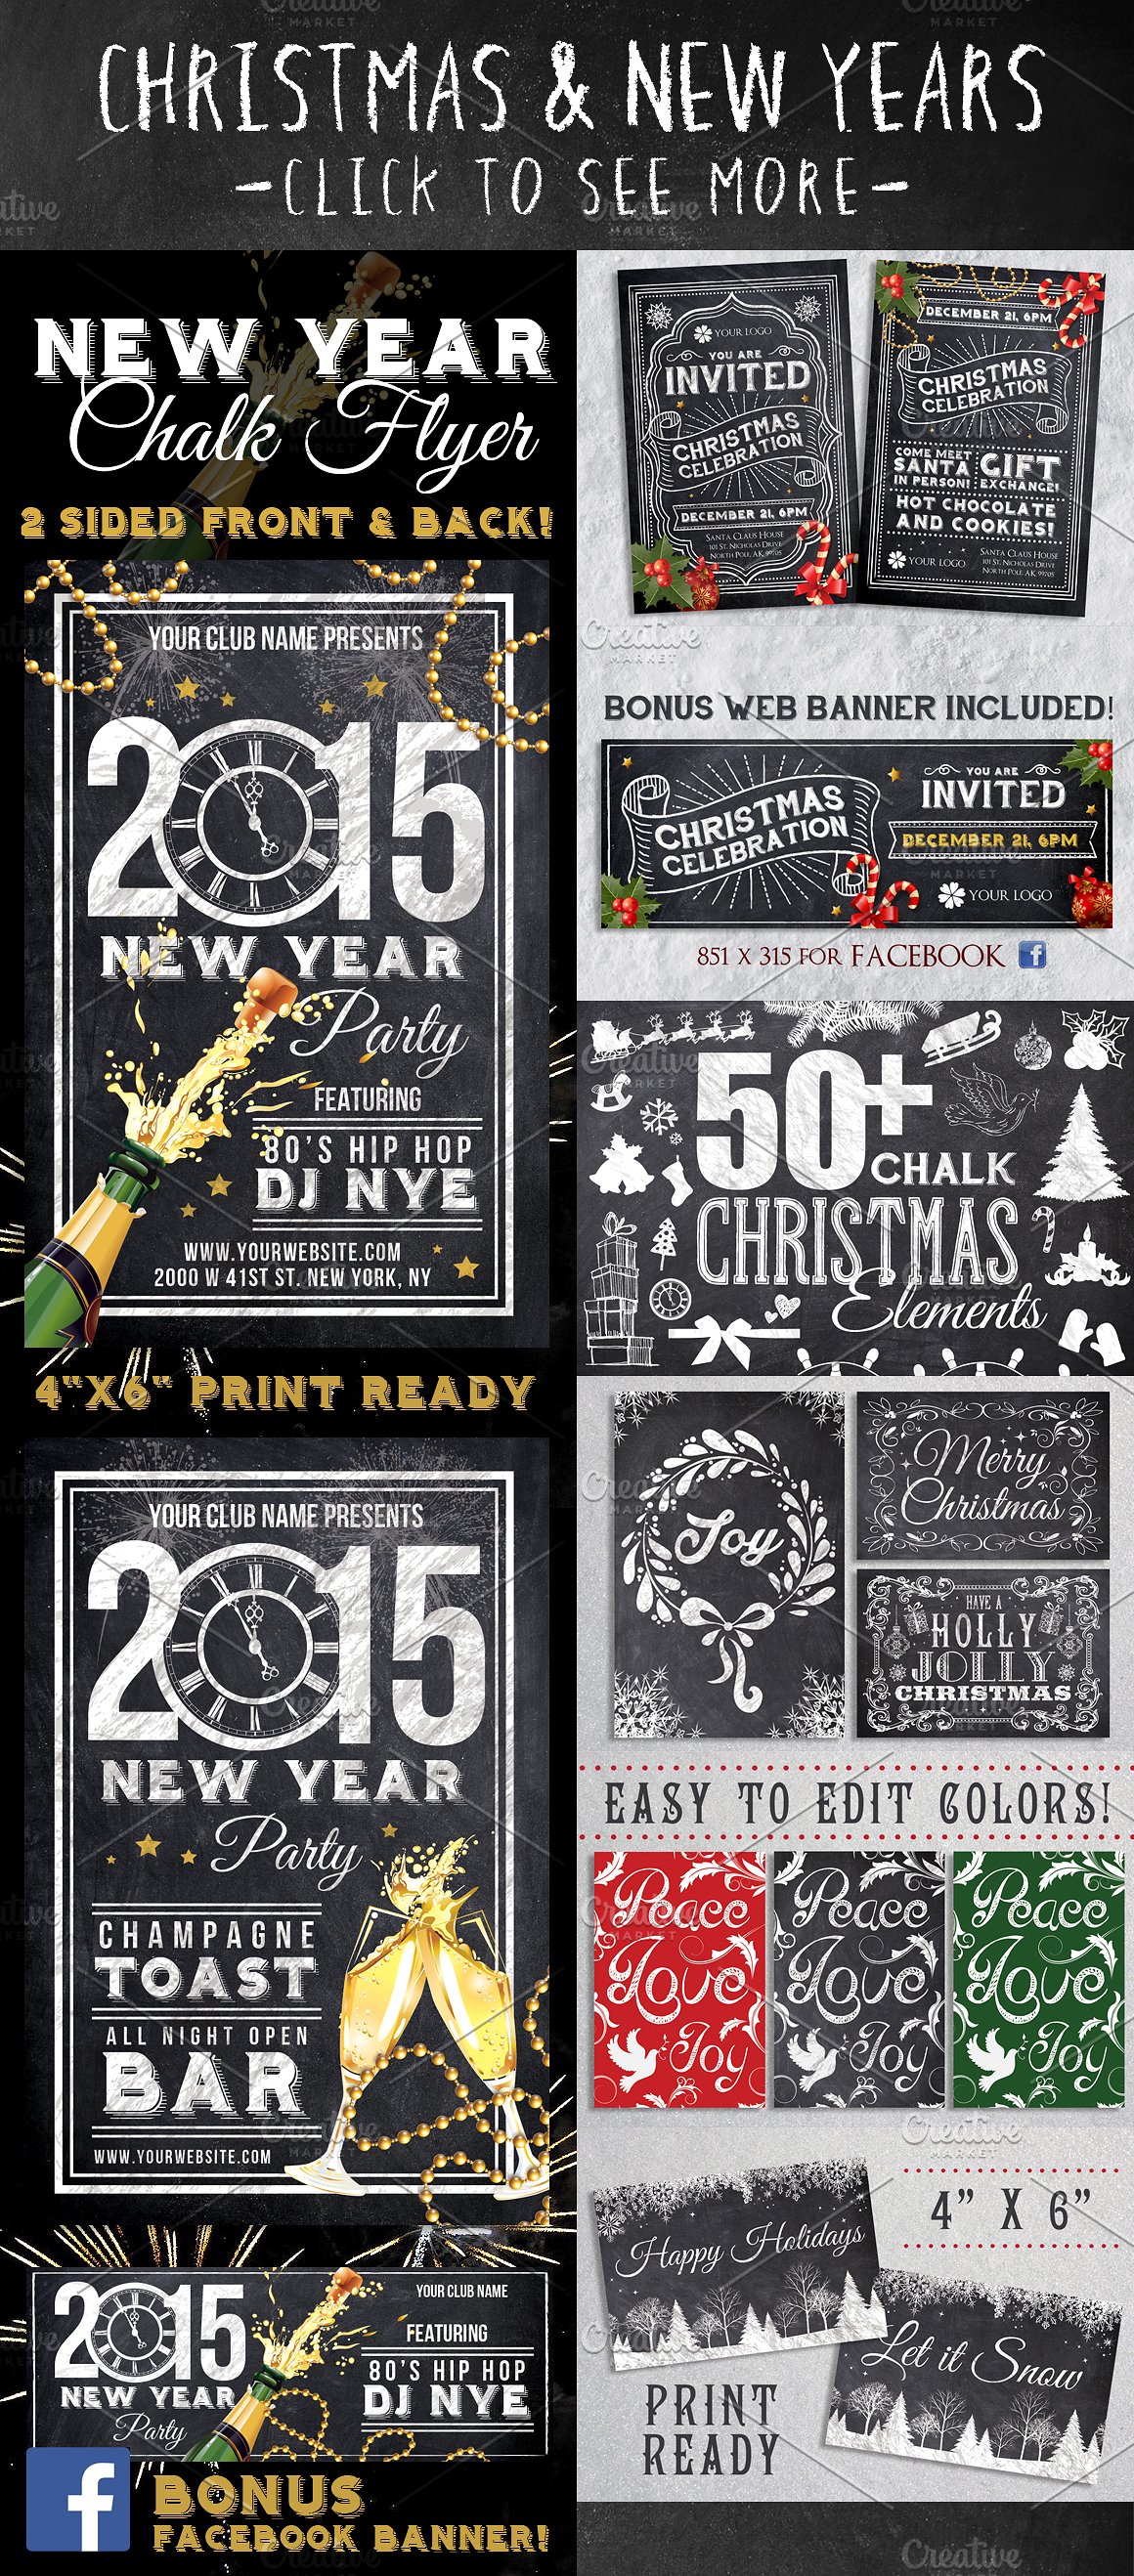 粉笔黑板效果的圣诞节、新年、感恩节和万圣节等传统西方节日海报模板下载[PSD]